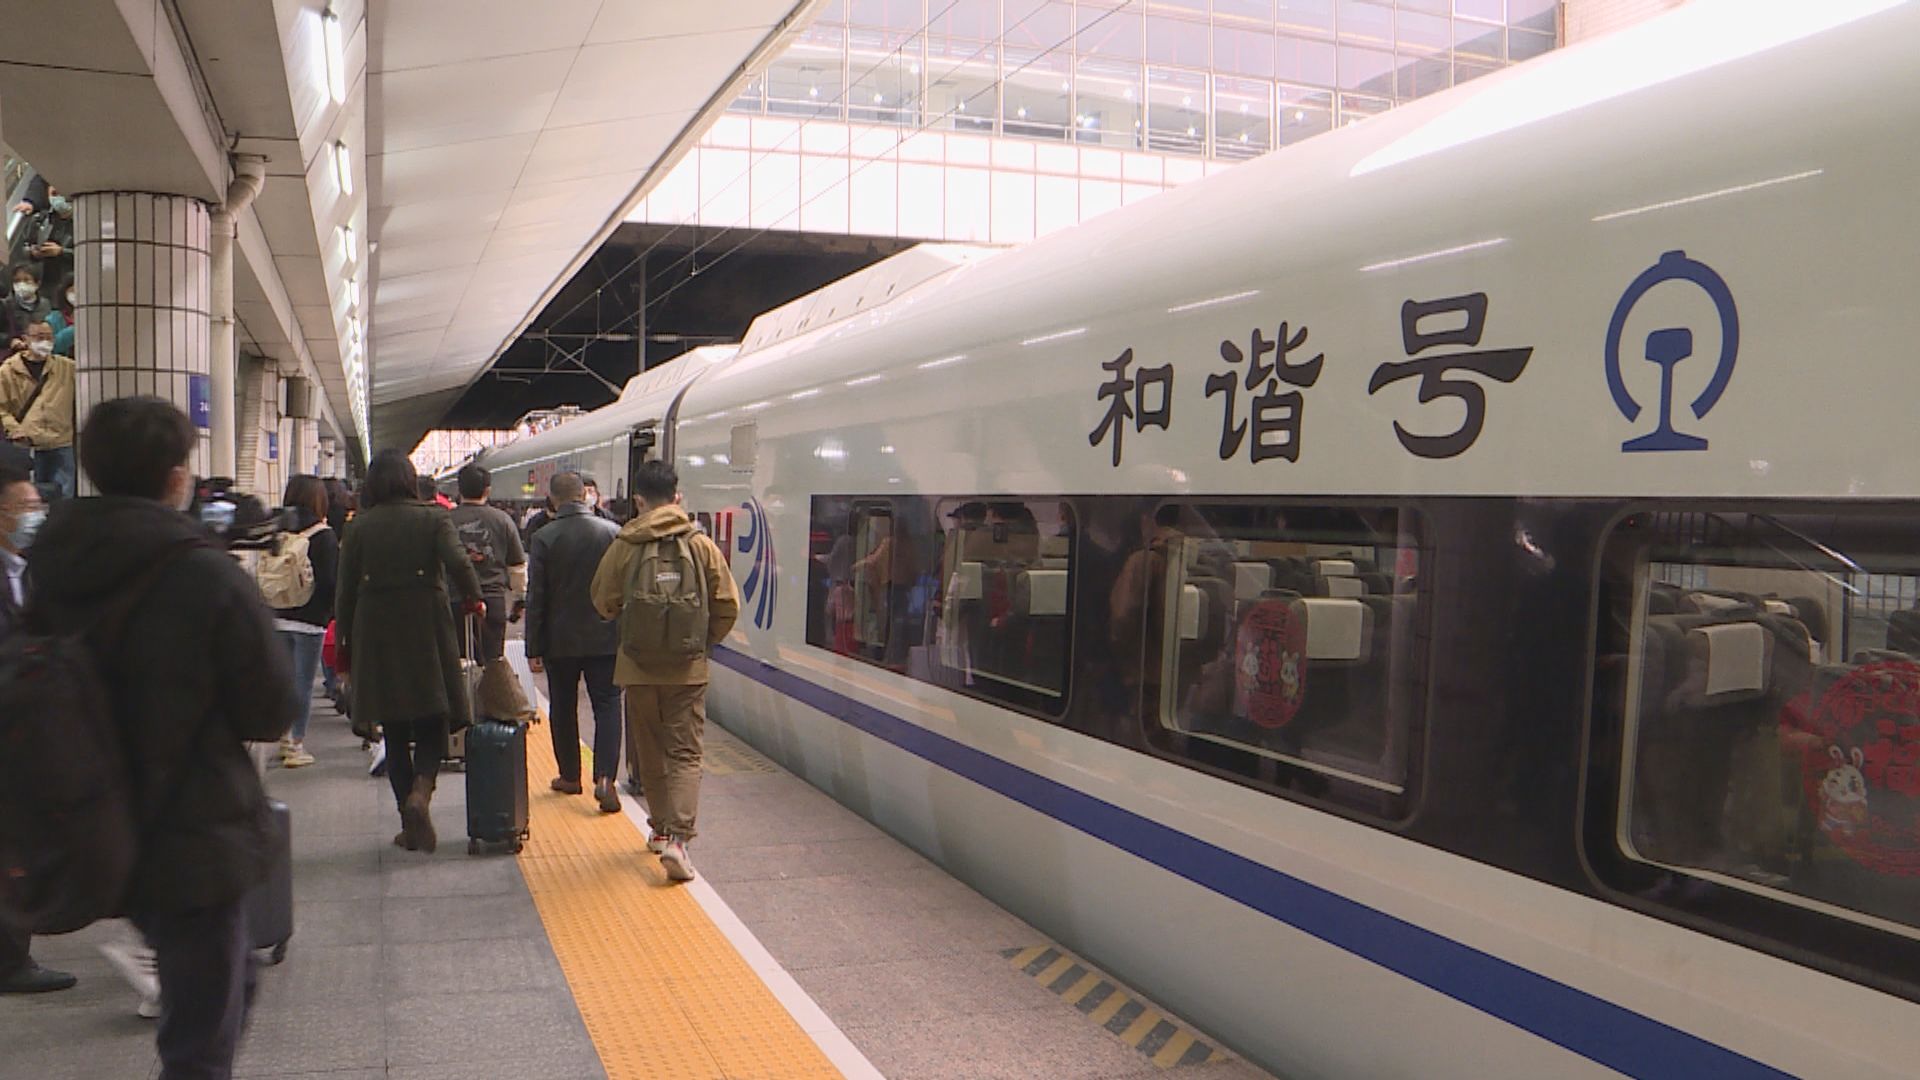 廣深將建第二高鐵 向南延線可銜接深圳北站連通香港